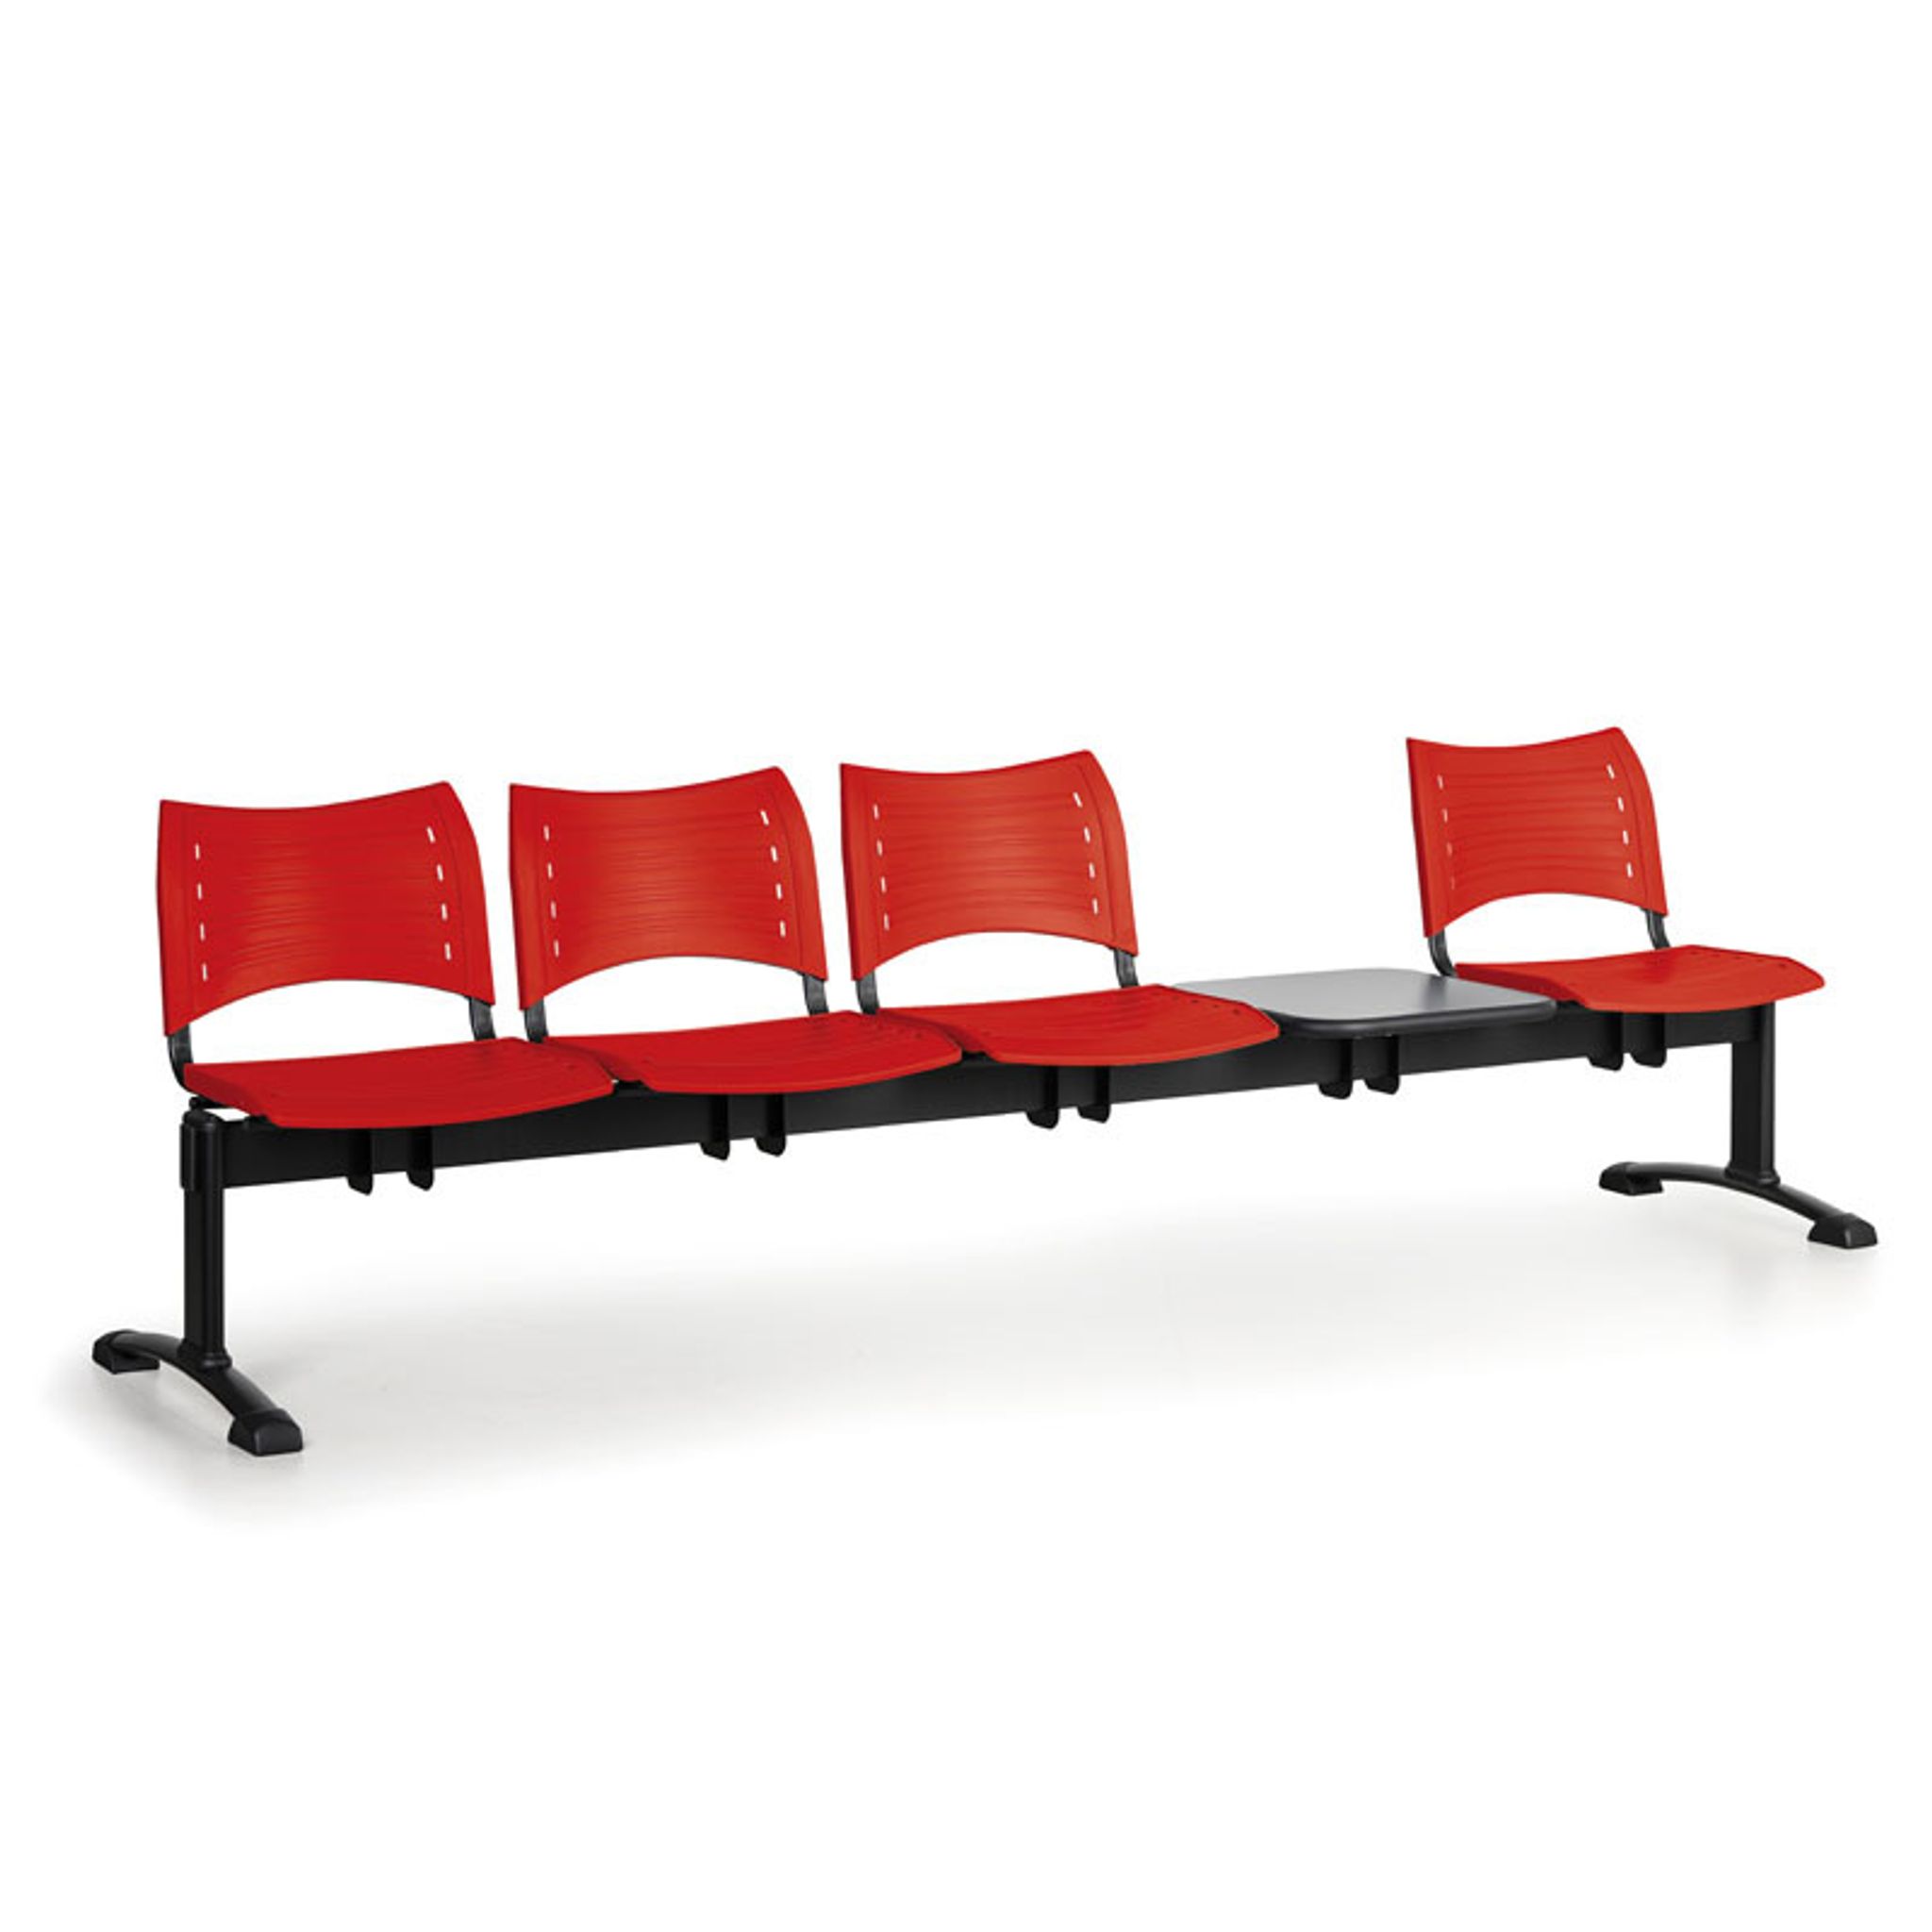 Ławka do poczekalni plastikowa VISIO, 4 siedzenia + stołek, czerwony, czarne nogi